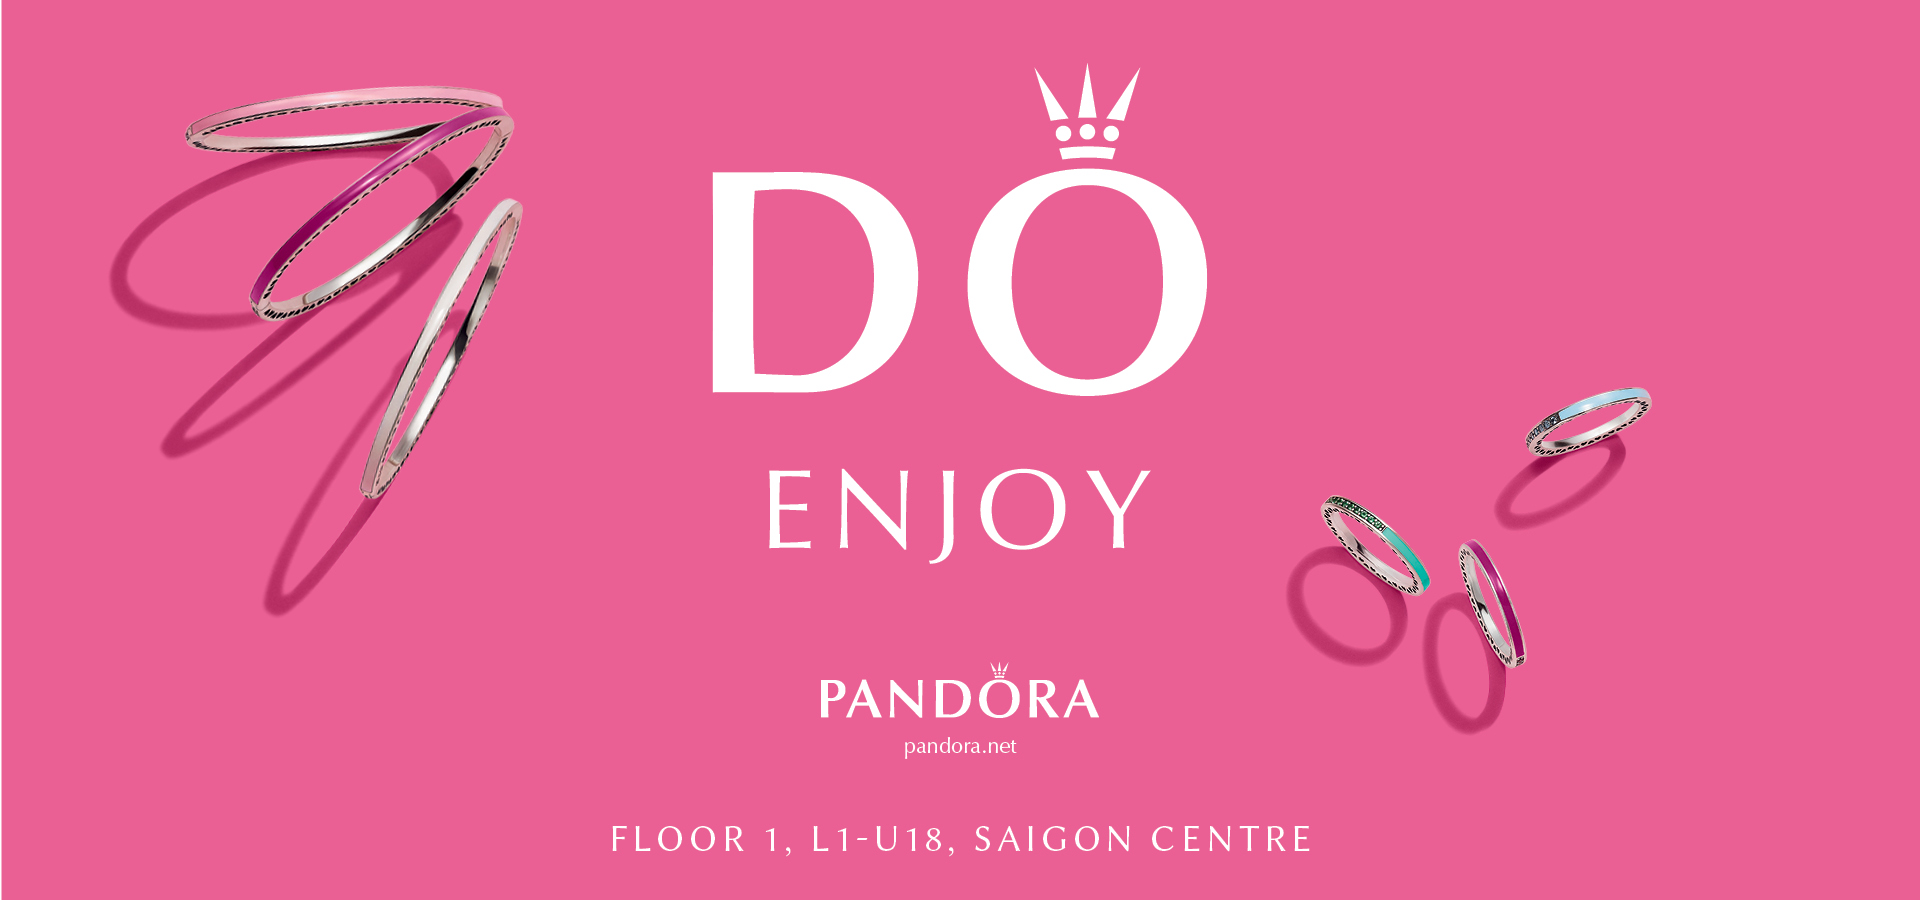 PANDORA – DO Join and Enjoy